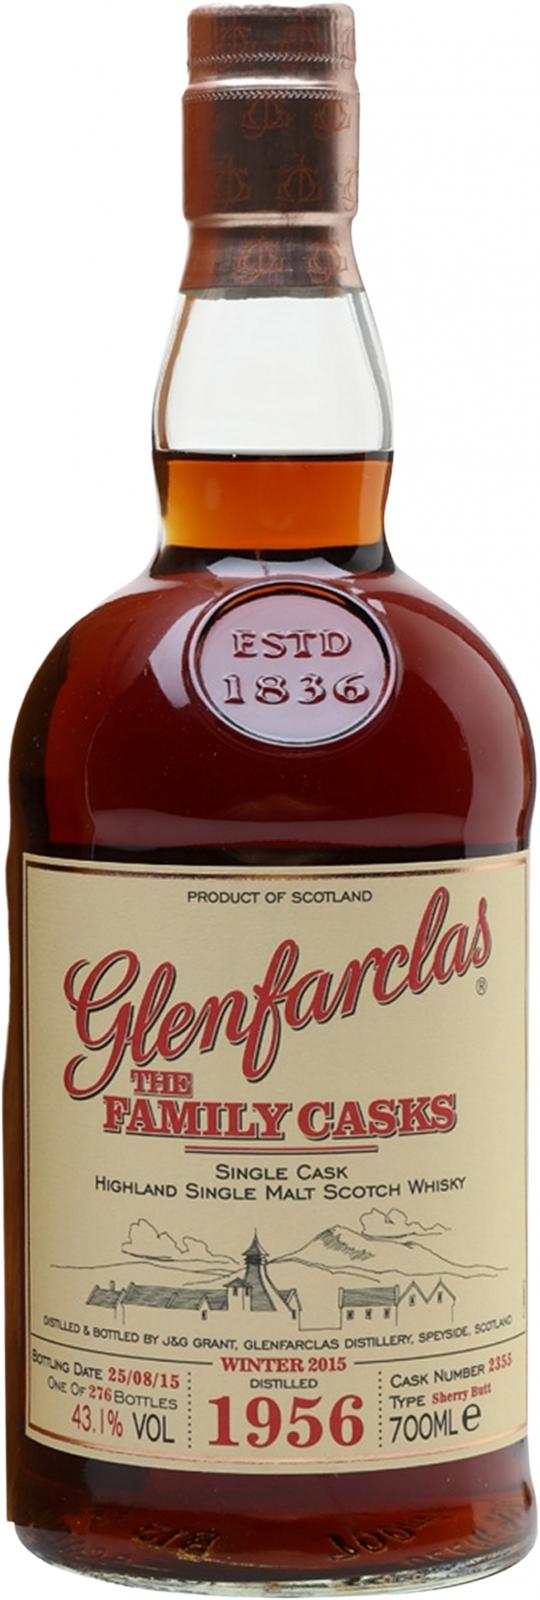 Glenfarclas 1956 The Family Casks Release W15 Sherry Butt #2355 43.1% 700ml